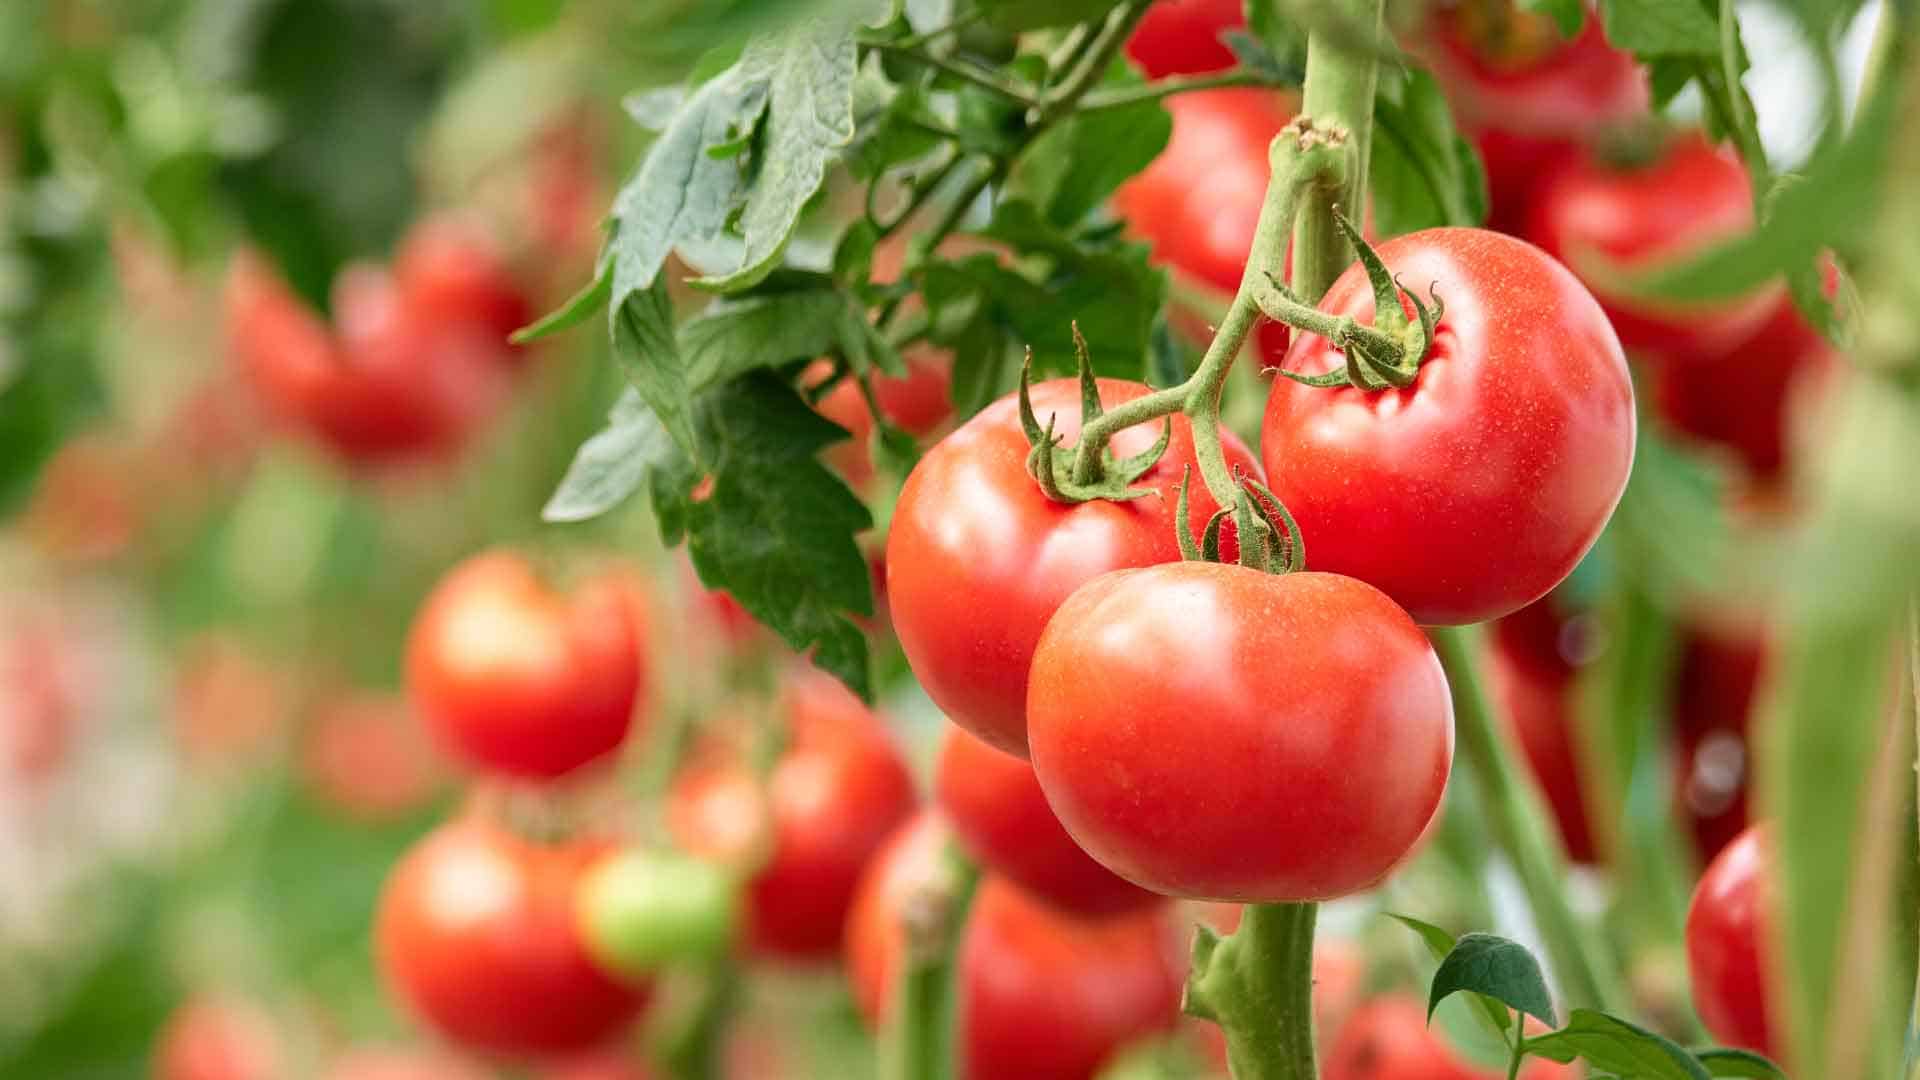 Fresh tomato's grown in vegetable garden.